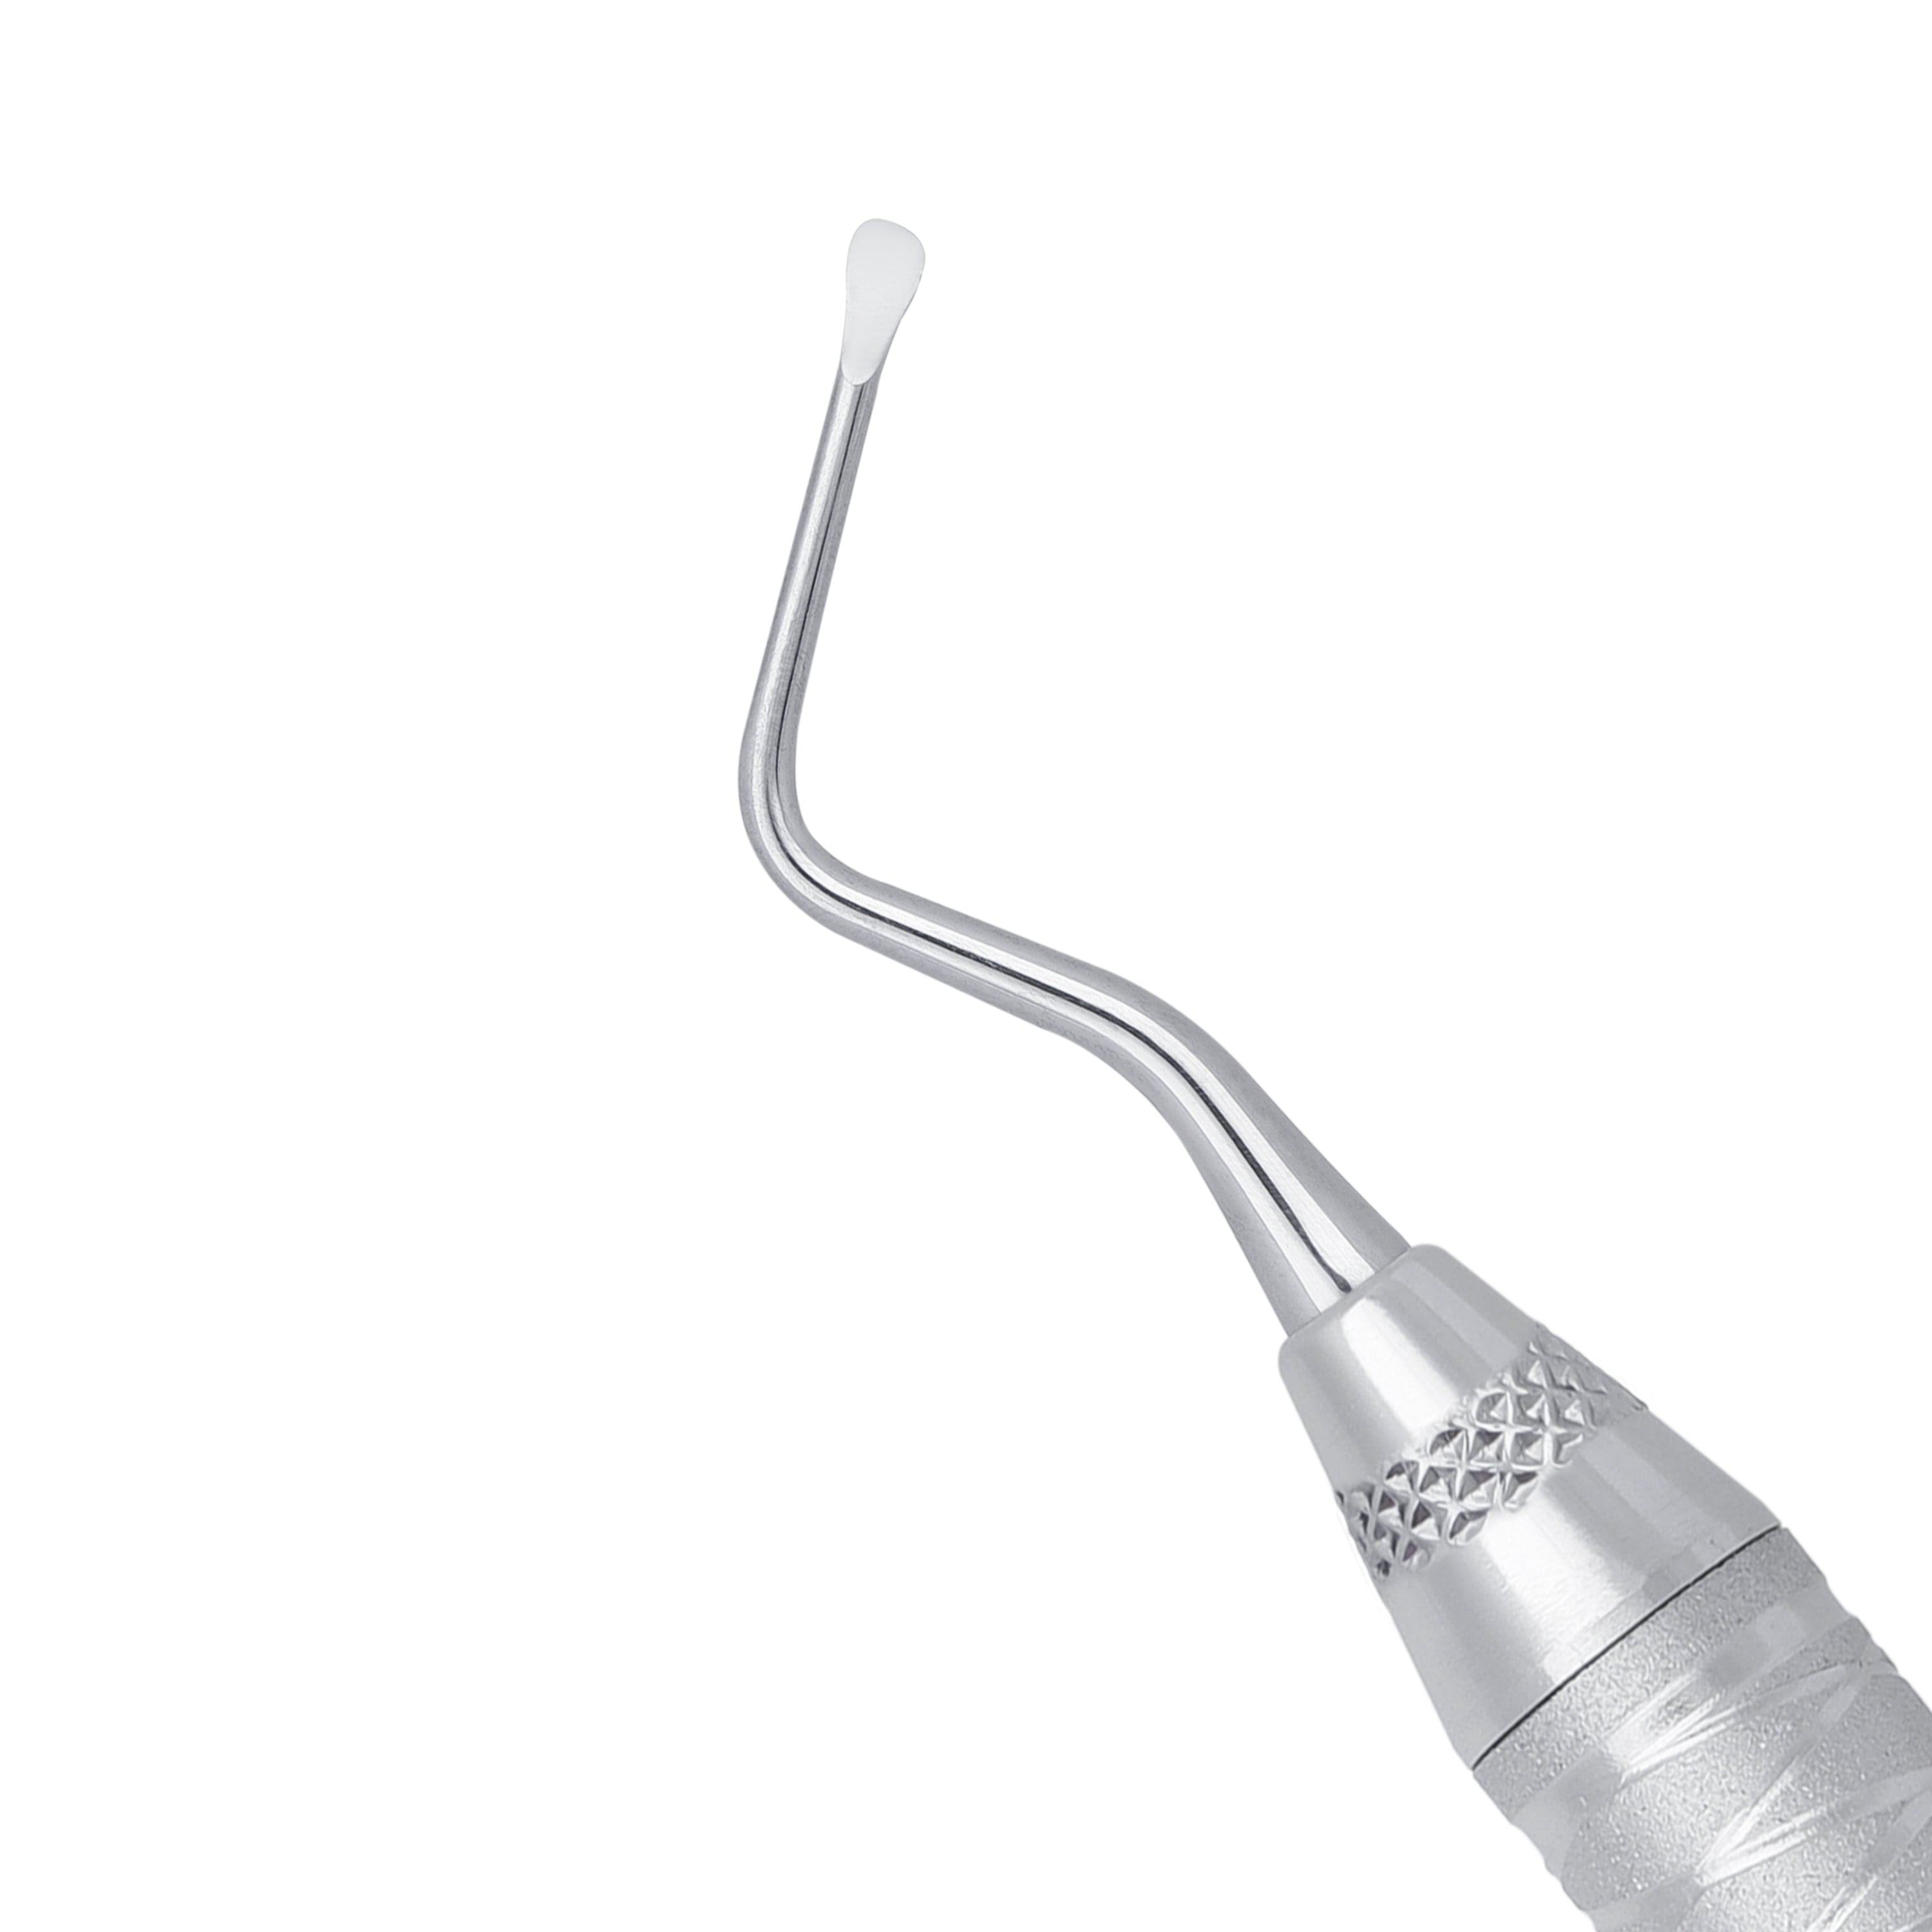 85 Lucas Spoon Shape Surgical Curette, 2.5MM - HiTeck Medical Instruments